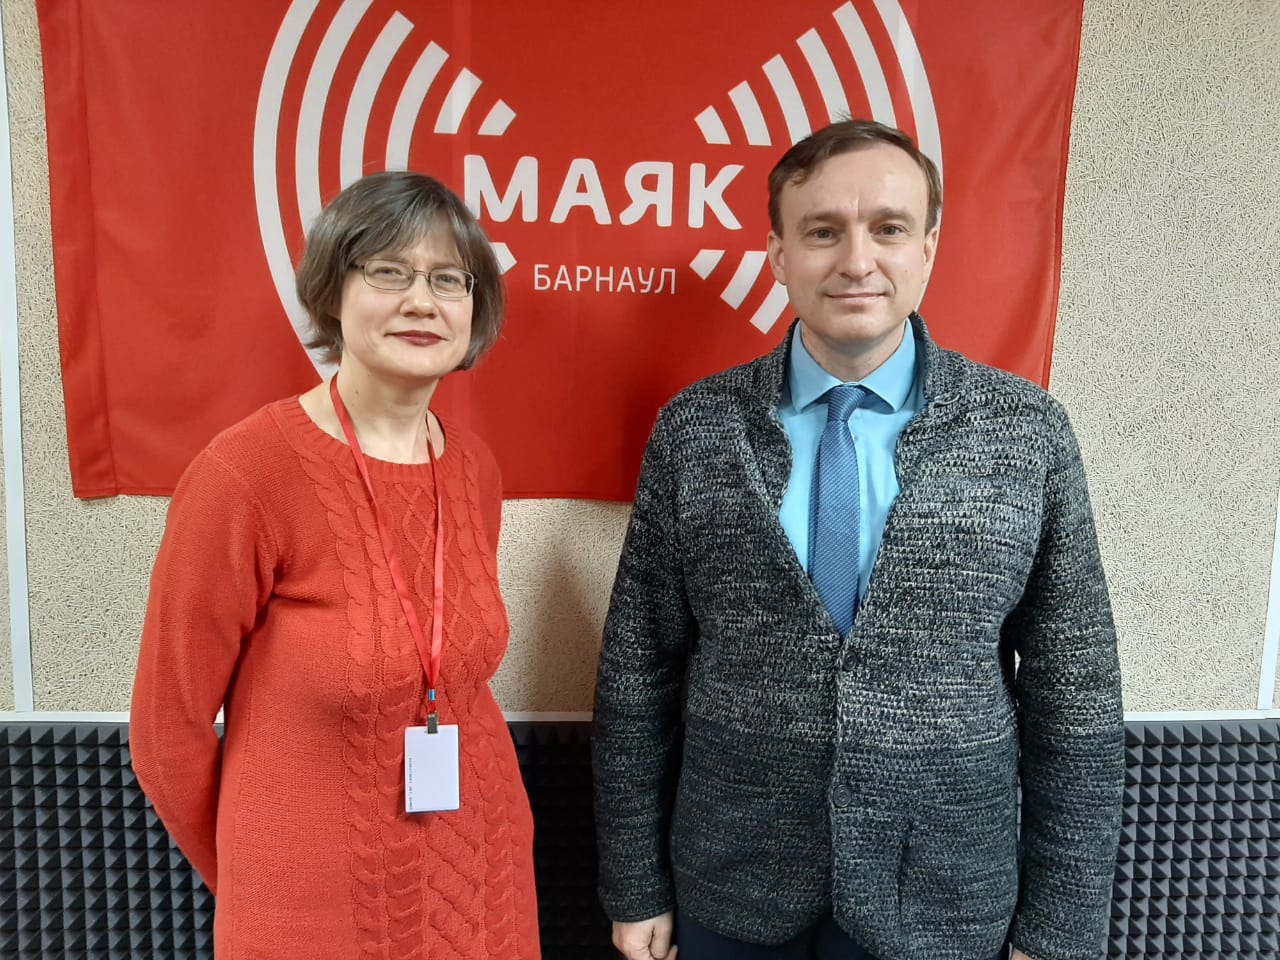 На Радио «Маяк» в Барнауле вышла программа с участием эксперта НОЦ алтаистики и тюркологии «Большой Алтай» Ивана Назарова